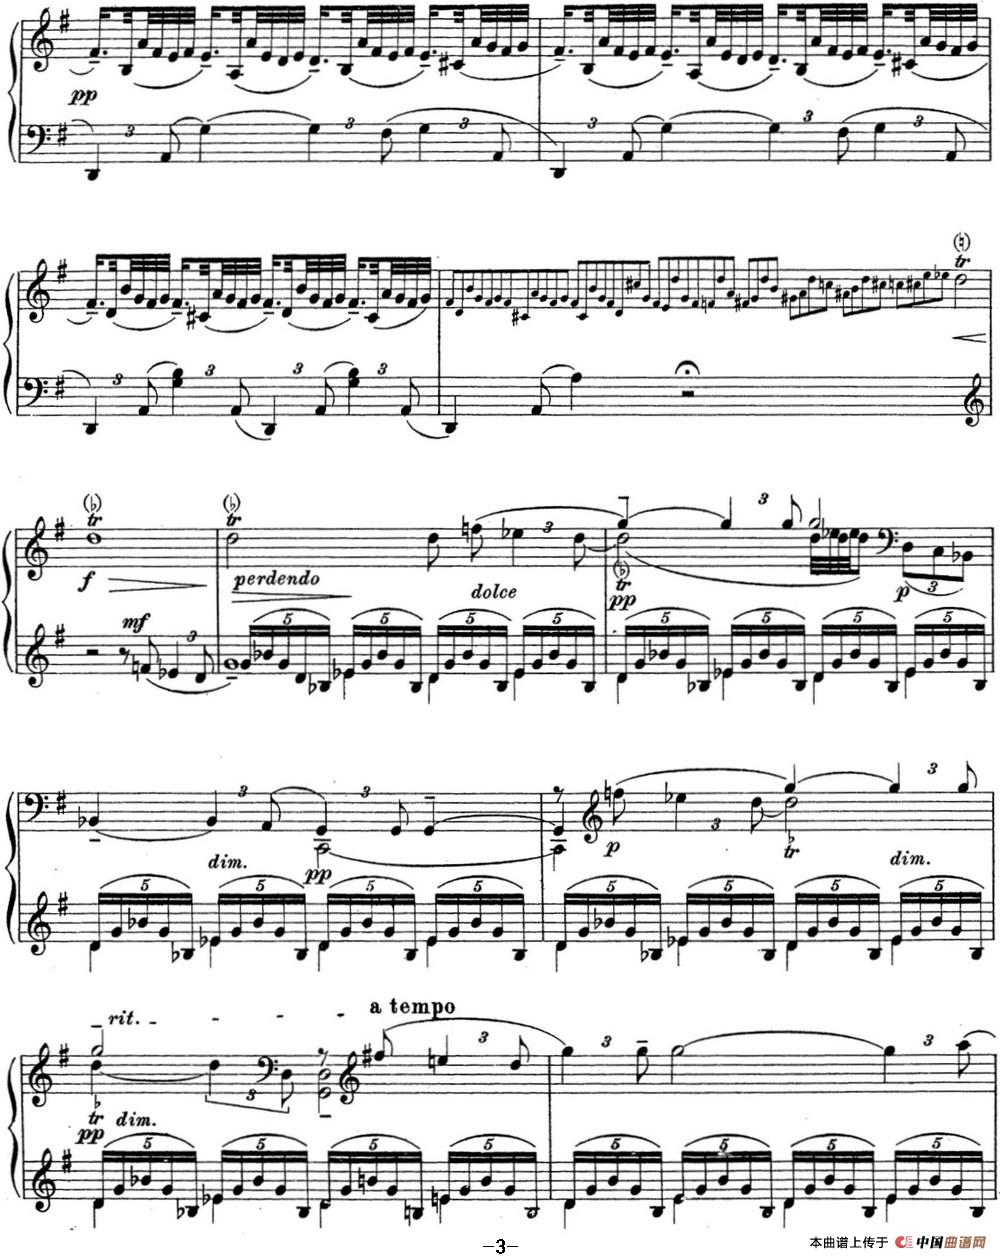 《拉赫玛尼诺夫 钢琴前奏曲16 G大调 Op.32 No.5》钢琴曲谱图分享